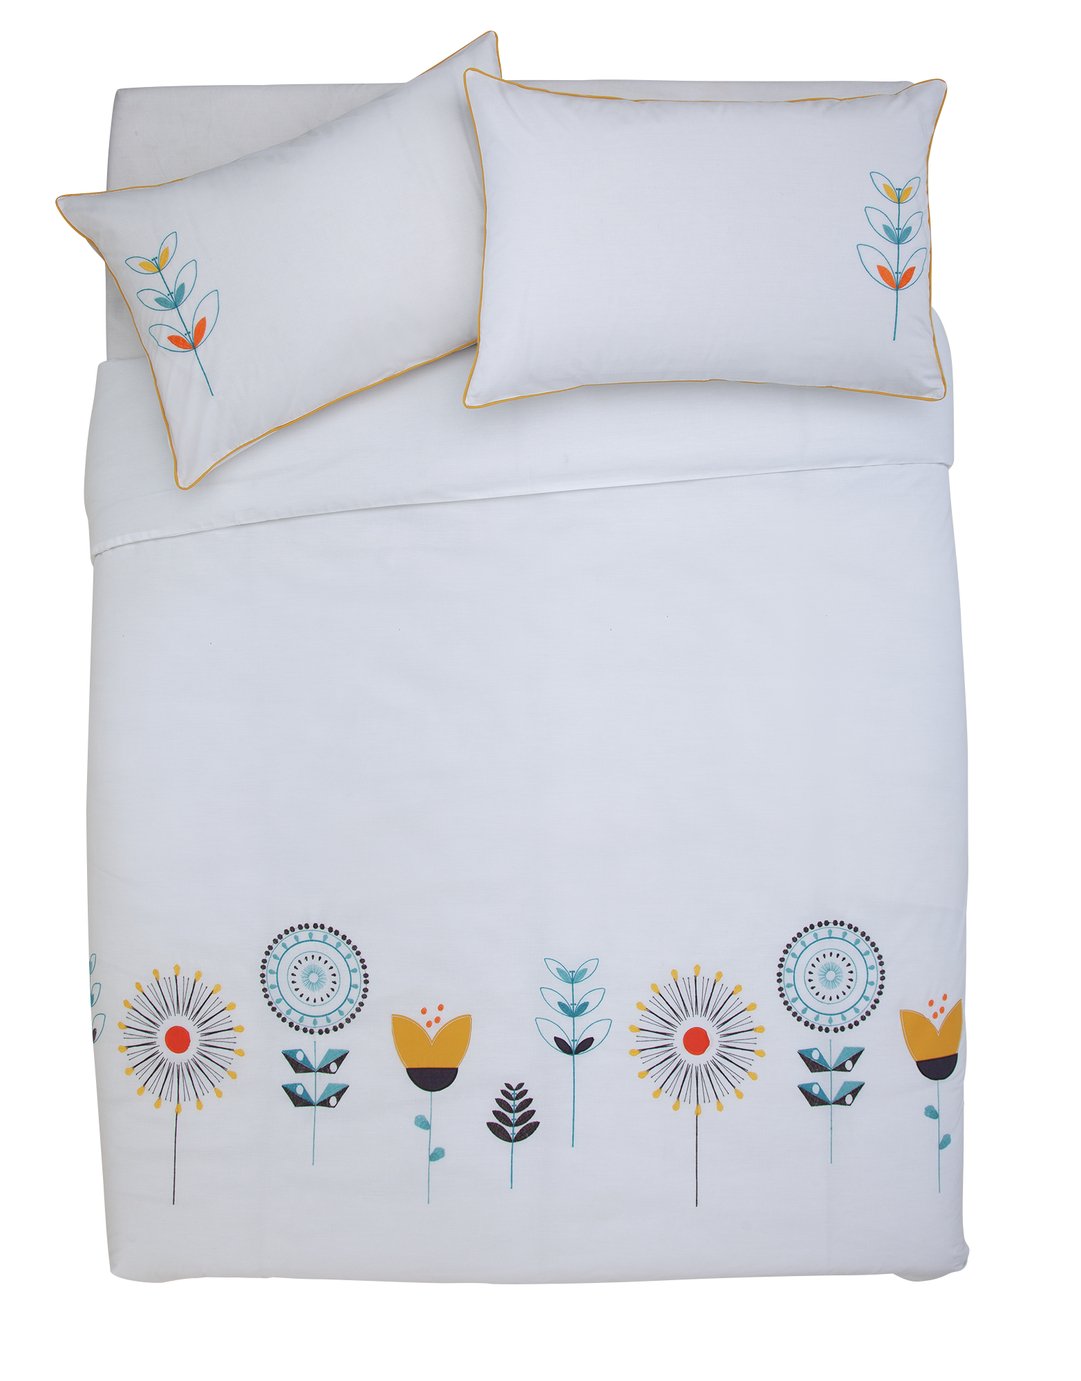 Argos Home Retro Embroidery Bedding Set review